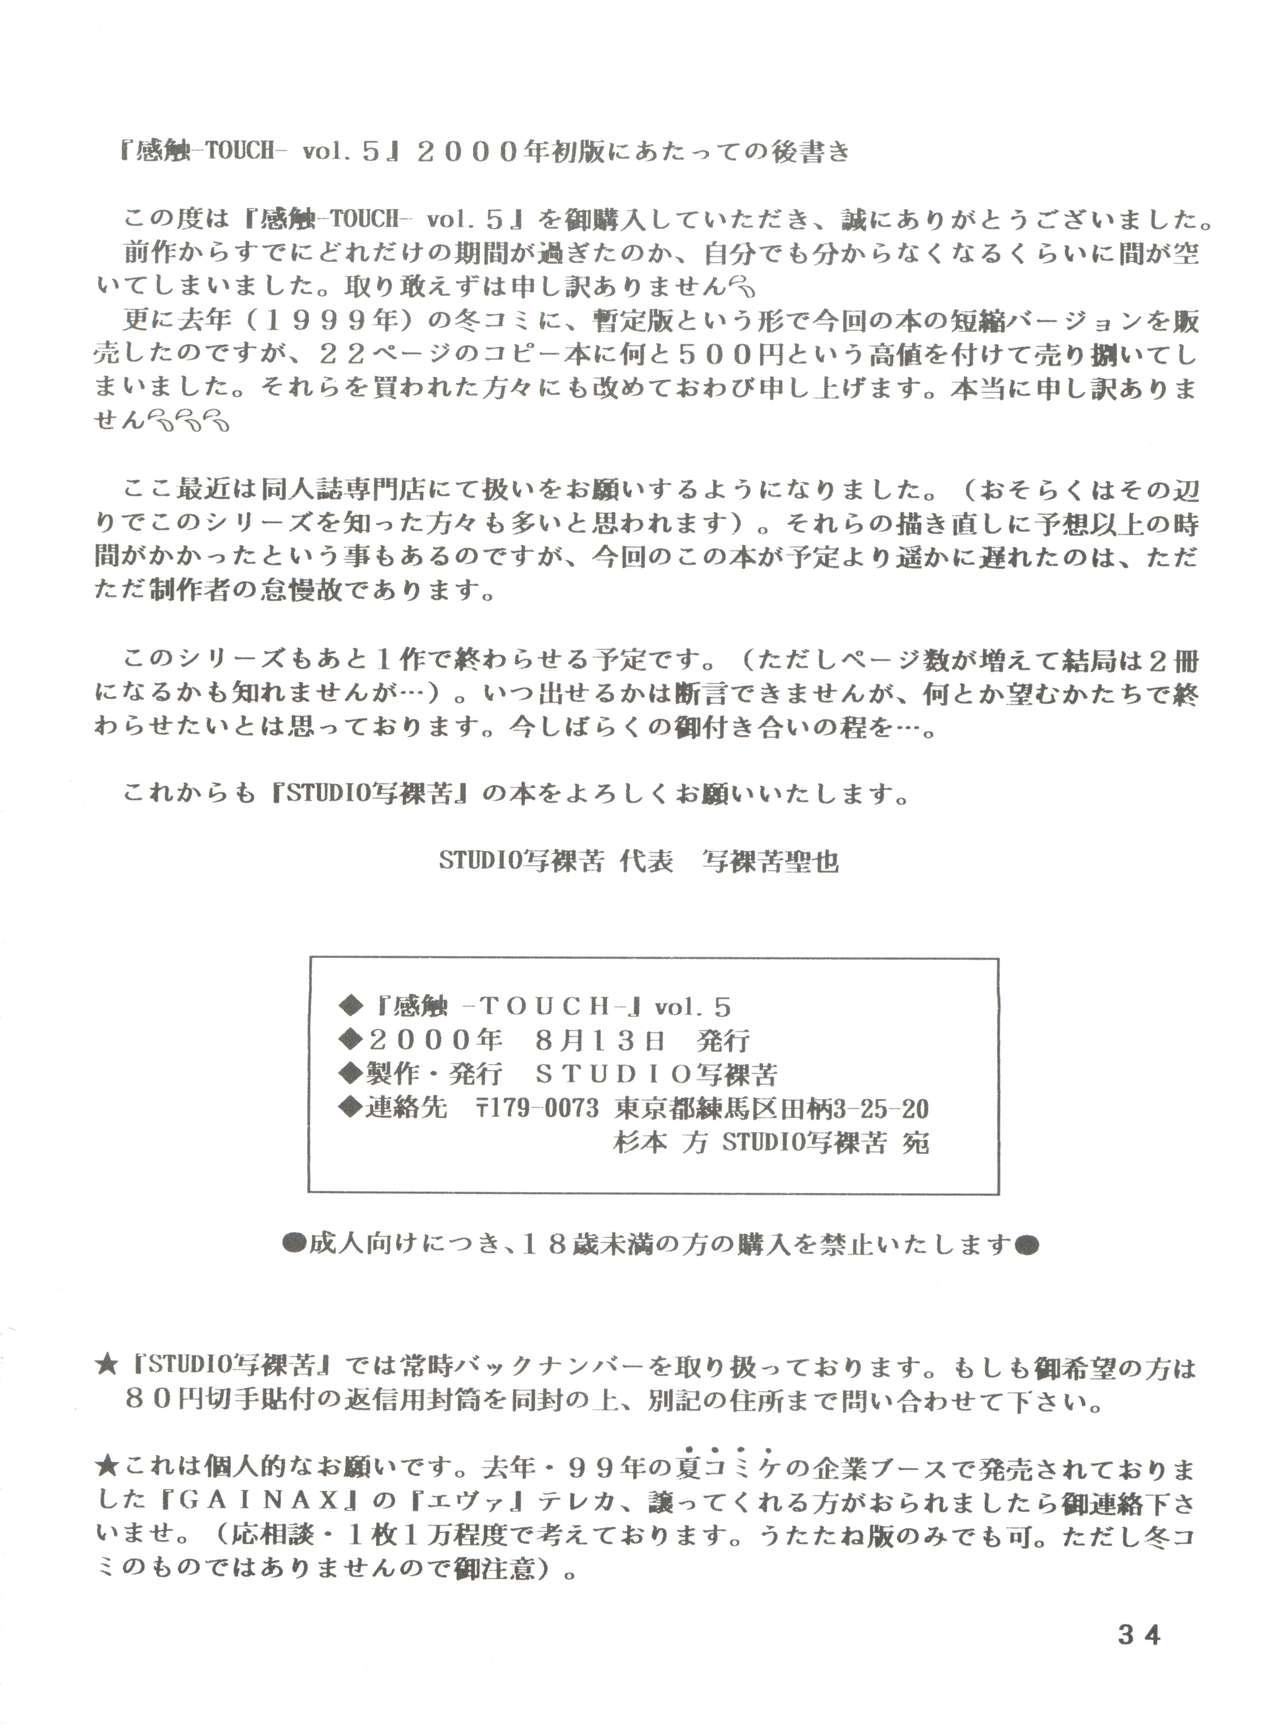 [STUDIO SHARAKU (Sharaku Seiya)] Kanshoku -TOUCH- vol.5 (Miyuki) [2000-08-13] 33